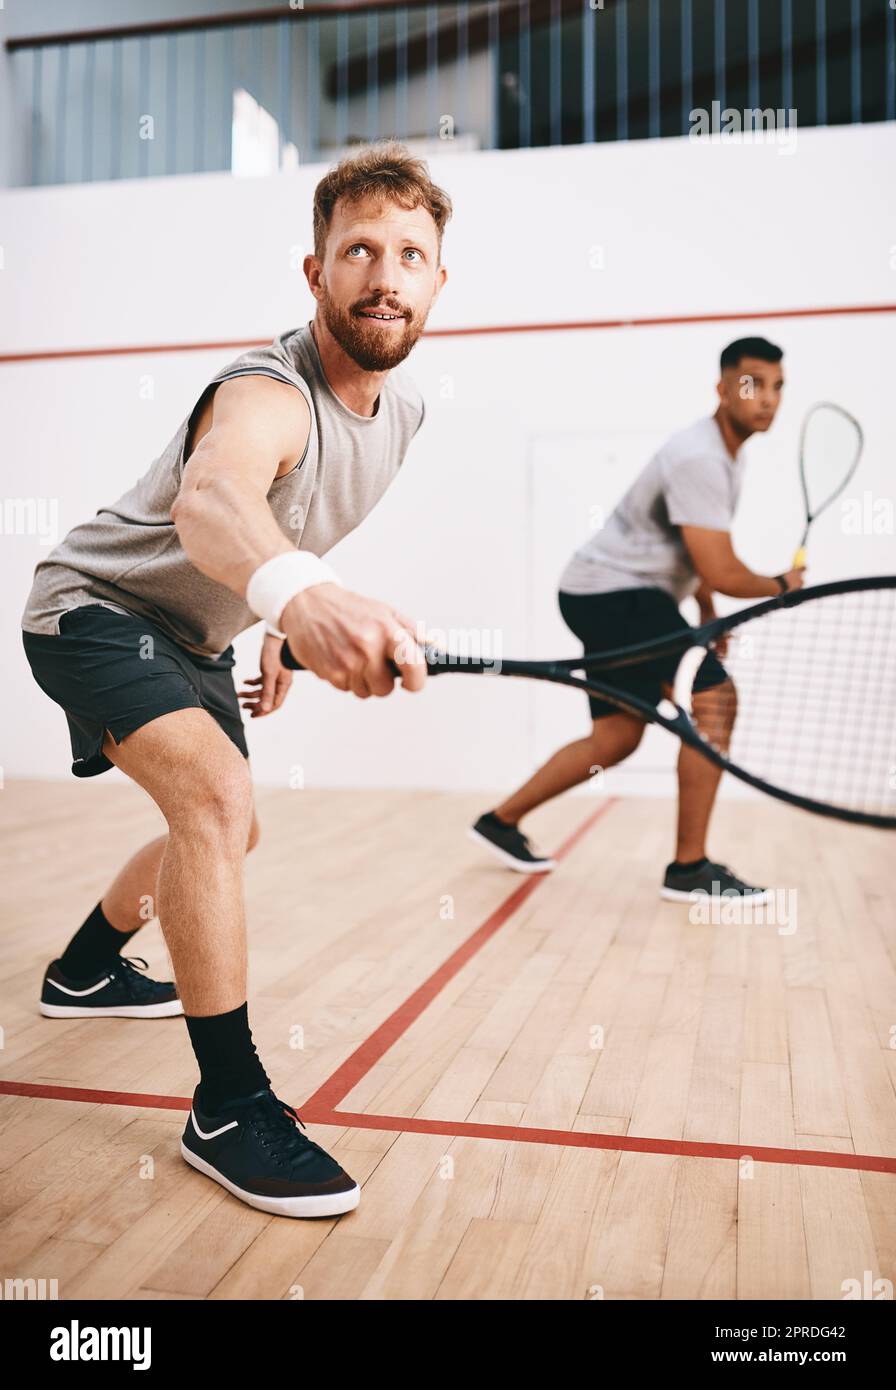 Er hat nur Augen für den Ball. Zwei junge Männer spielen ein Squash-Spiel. Stockfoto